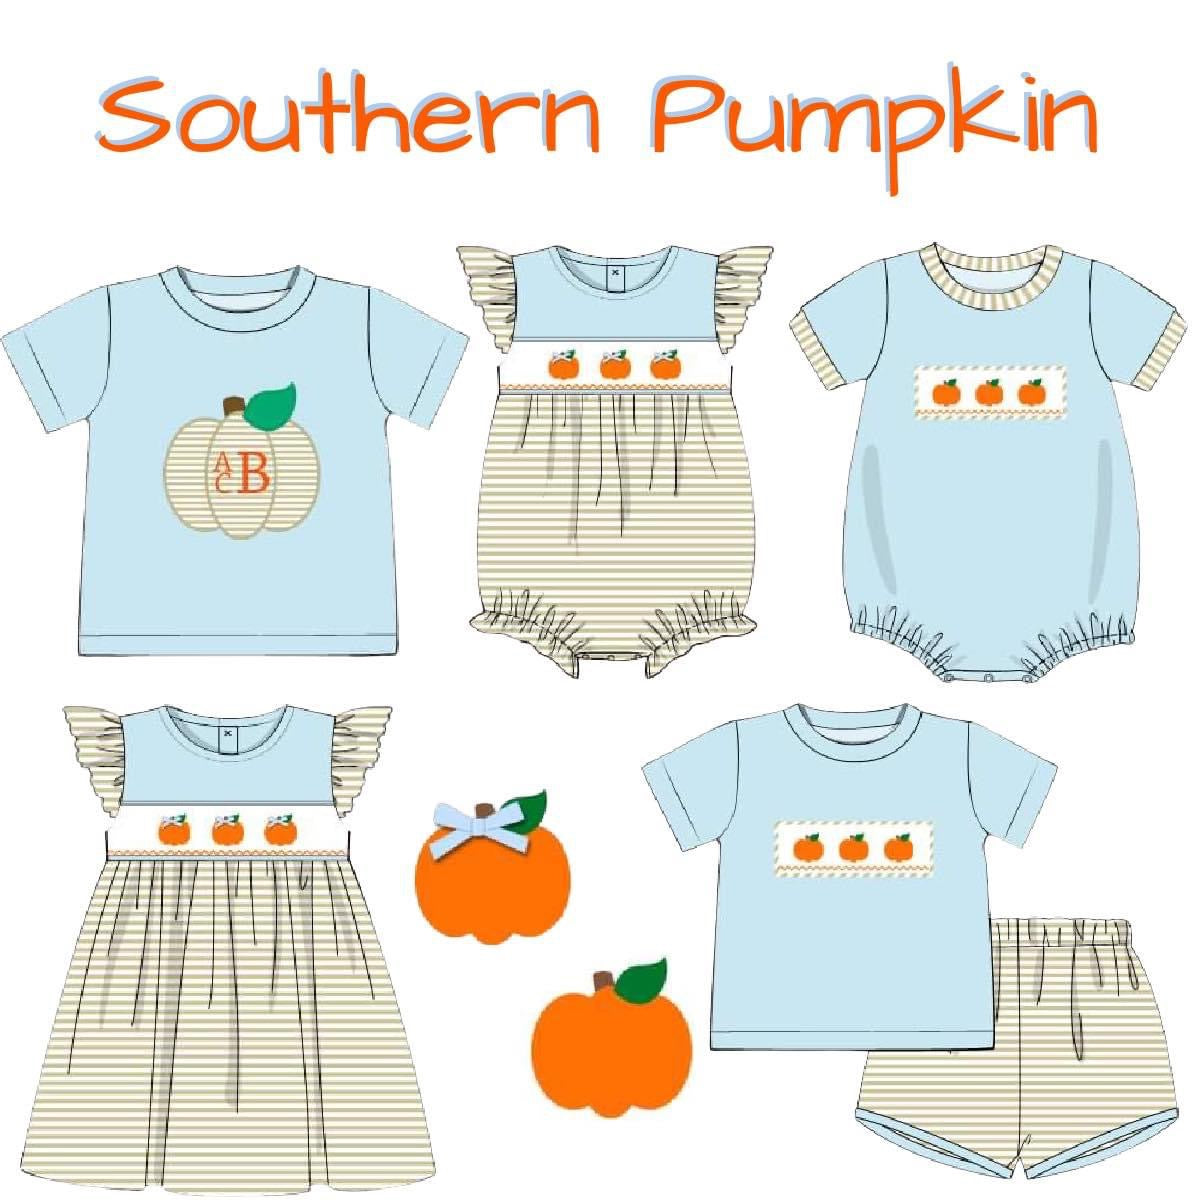 Southern Pumpkin (End: 5/27 ETA: Sept.)